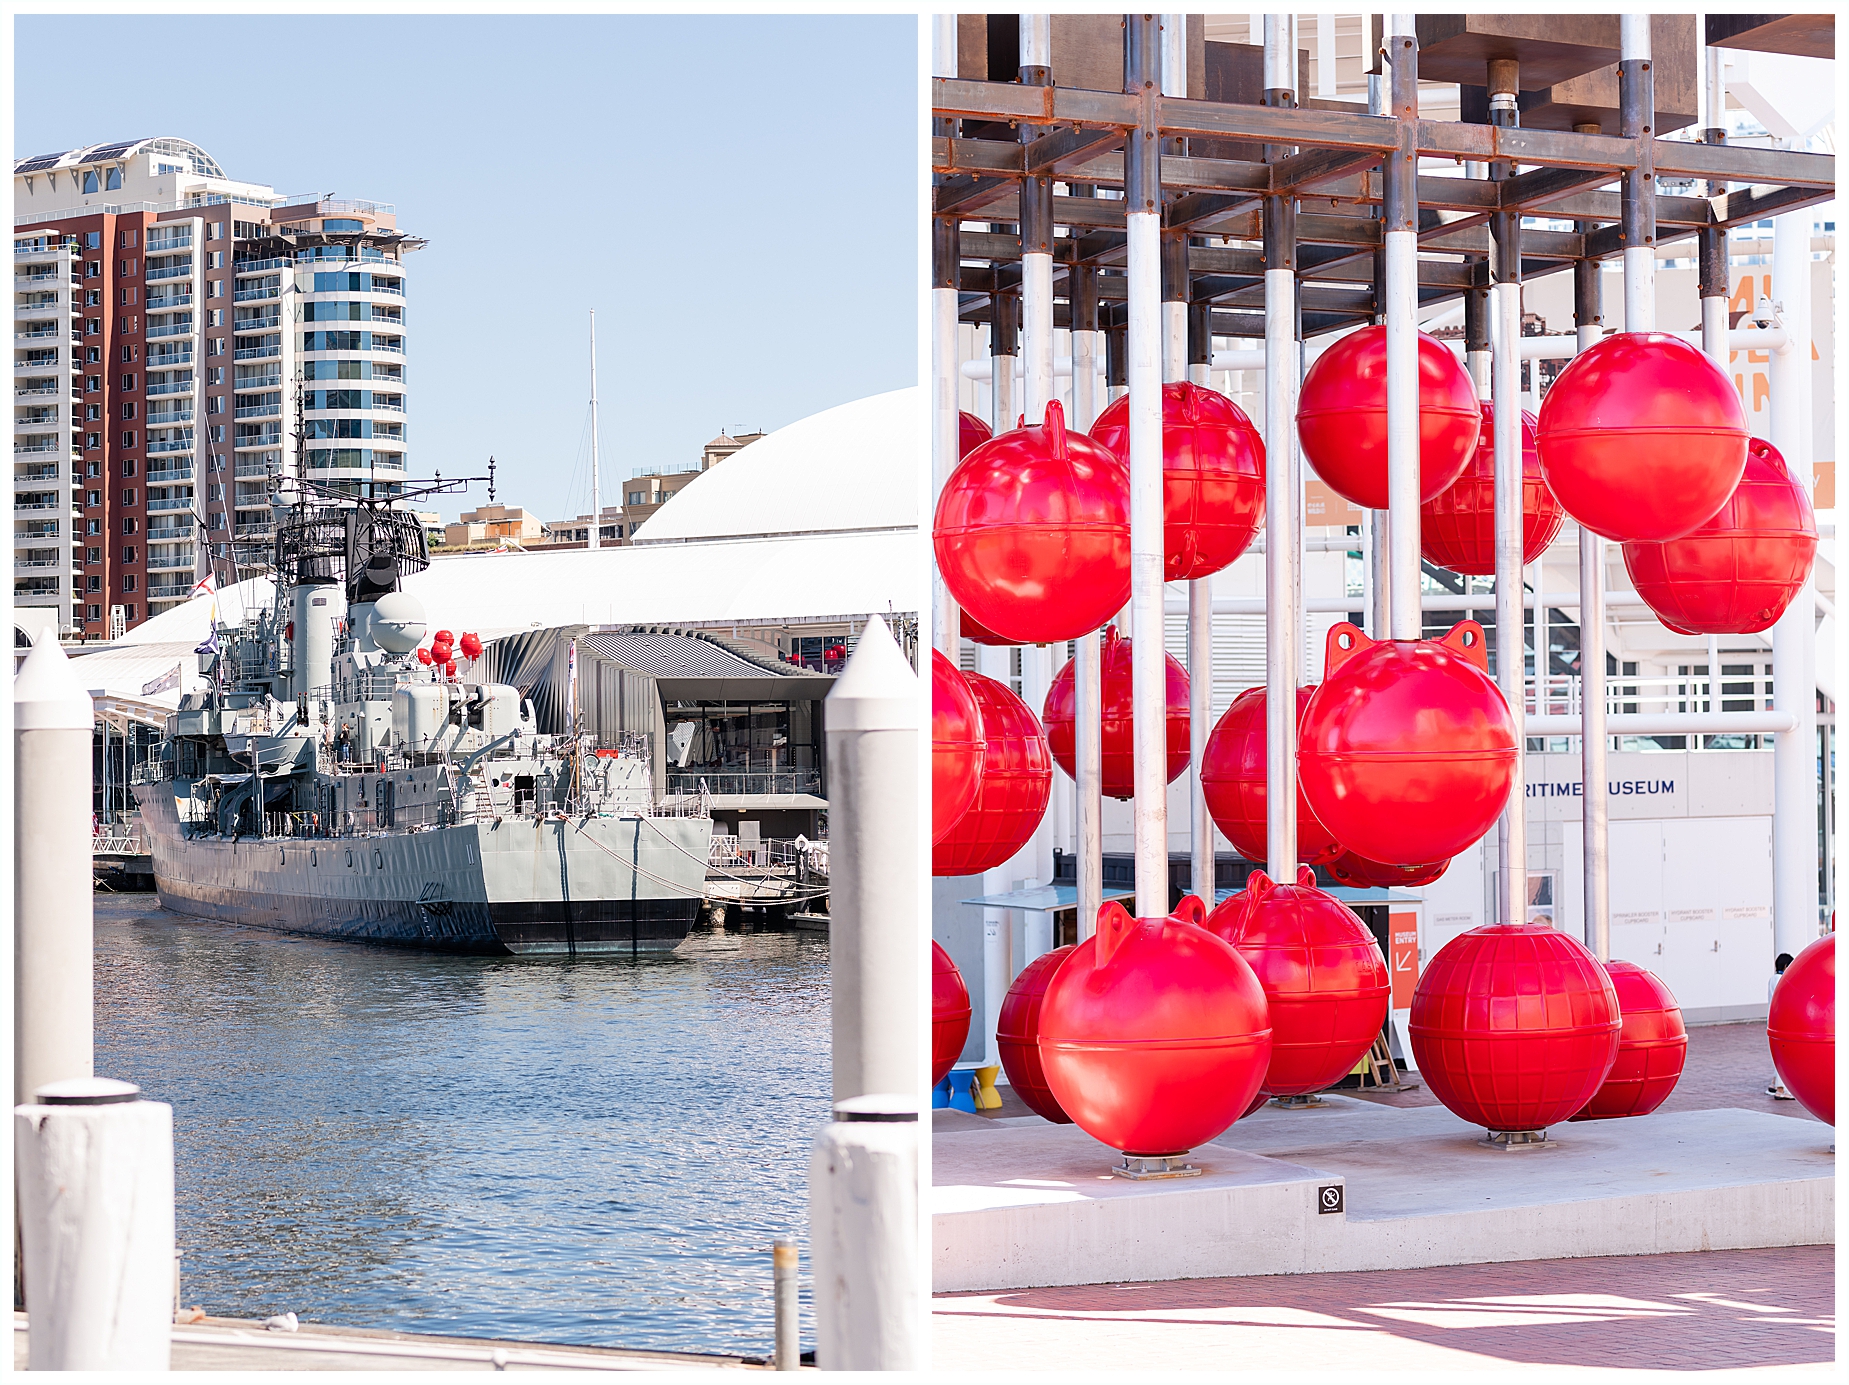 Sydney Harbour views Maritime Museum